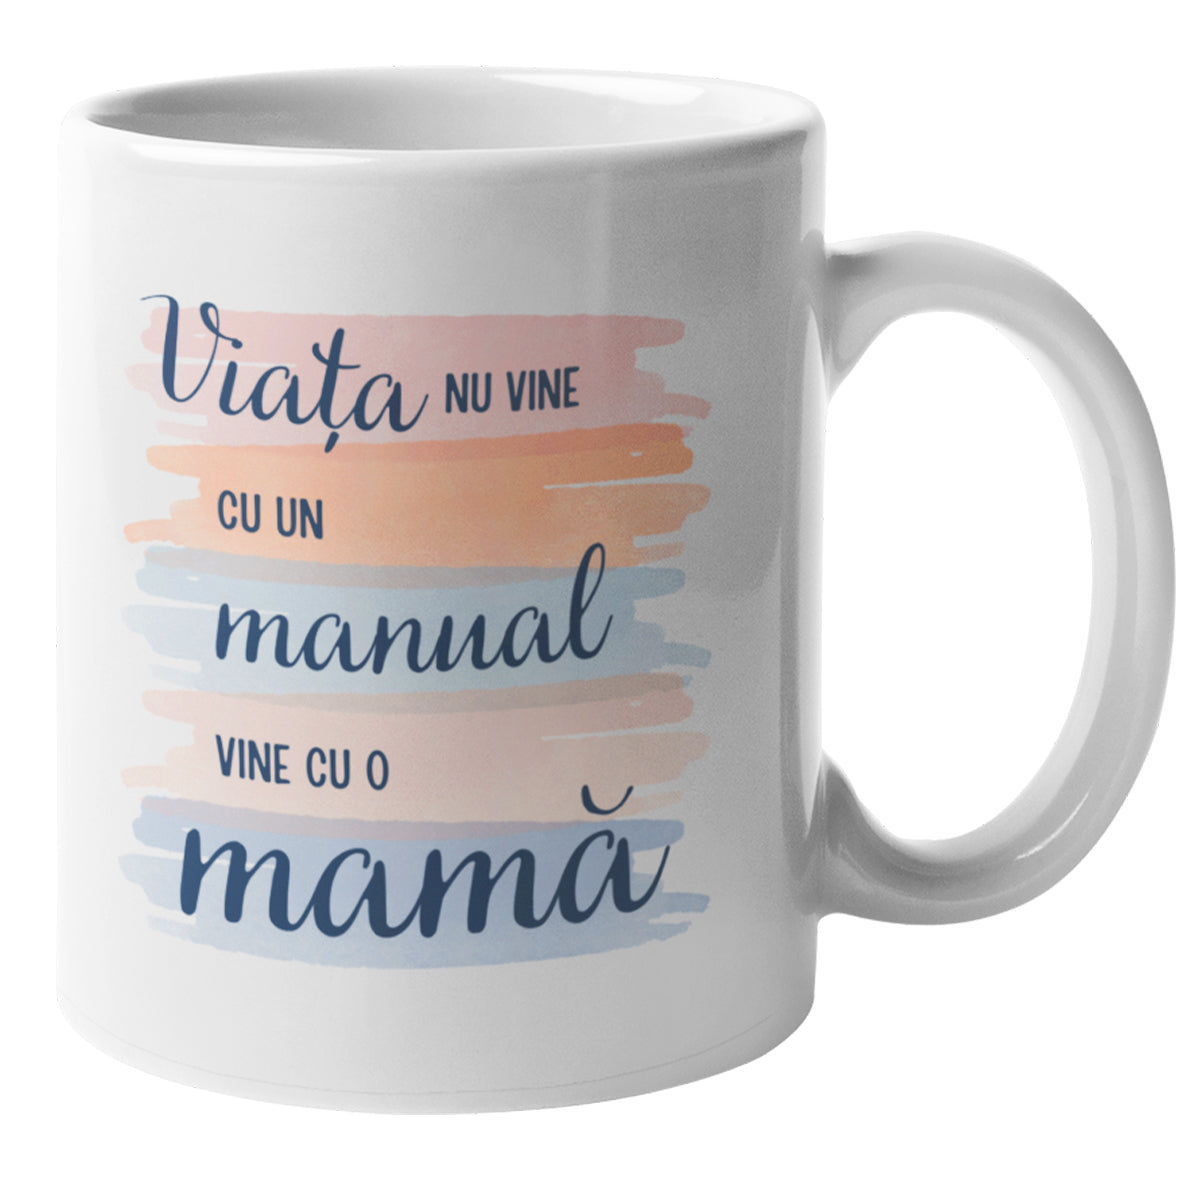 Cadou Pentru Mama: Cana Ceramica, 330 ml, Printata Cu Mesaj "Viata nu vine cu un manual vine cu o mama"